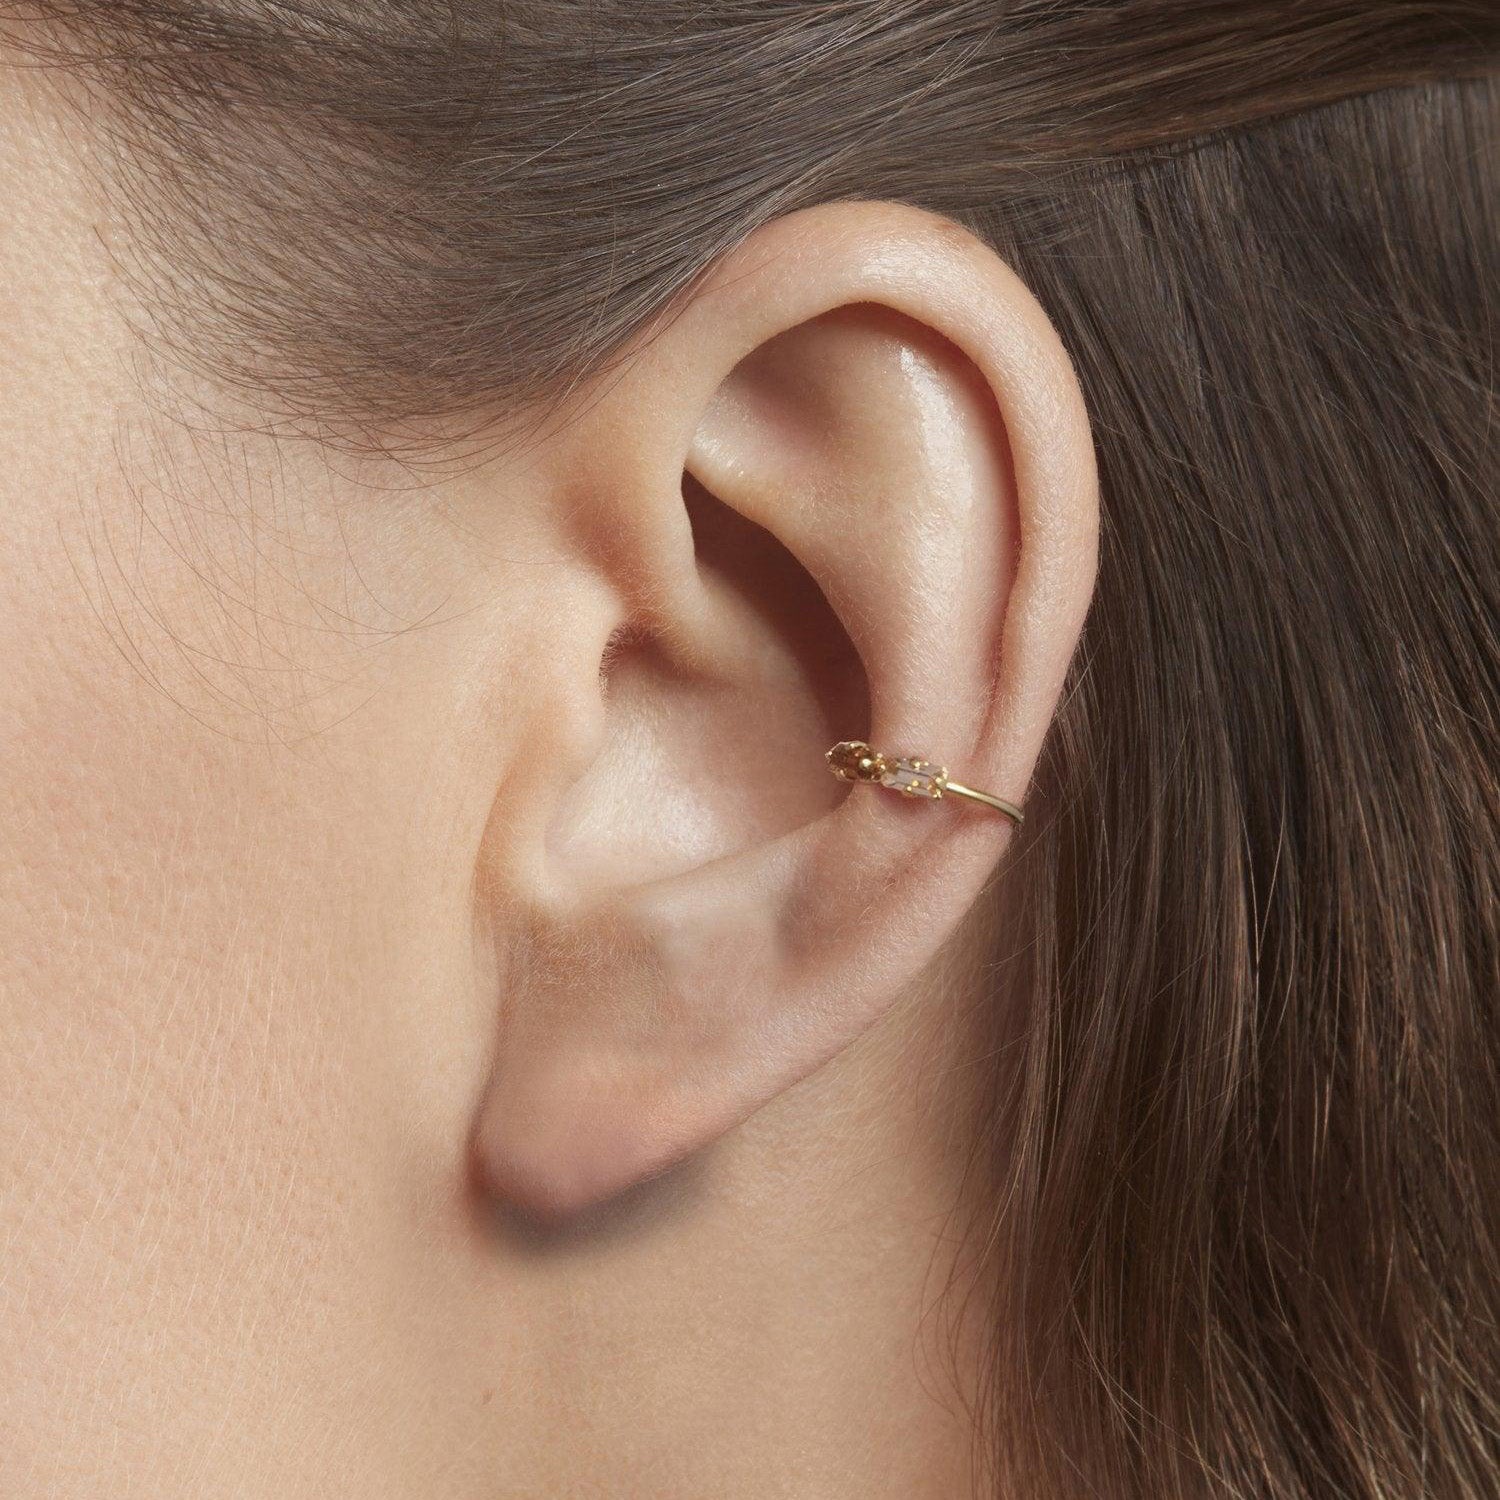 Denis ear ring